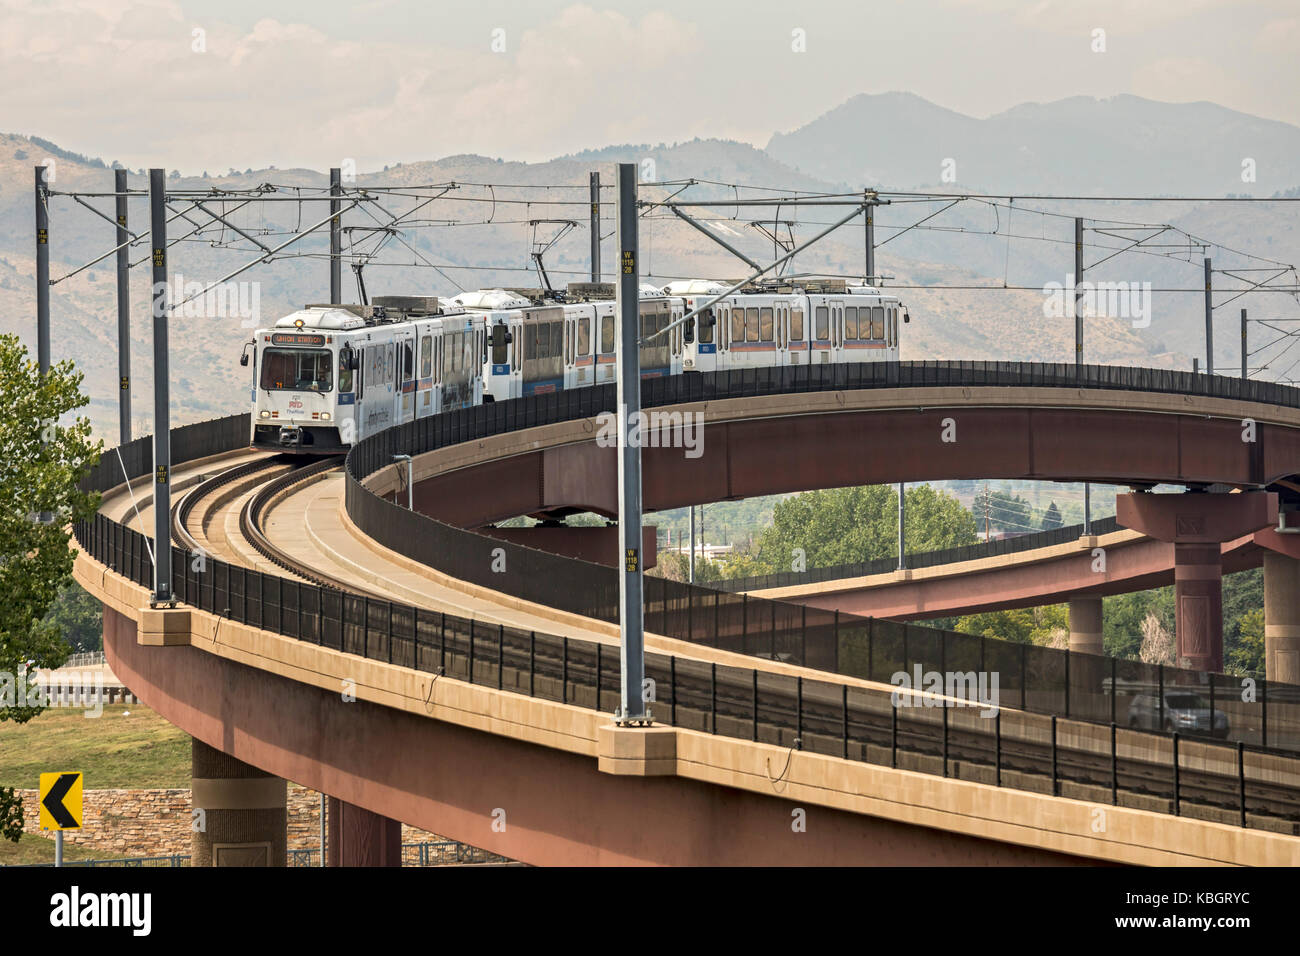 Lakewood, Colorado - ein Zug auf dem 'W' von rapid transit system Denver's kreuzt eine Autobahn. Die Regional Transportation District betreibt neun Ra Stockfoto